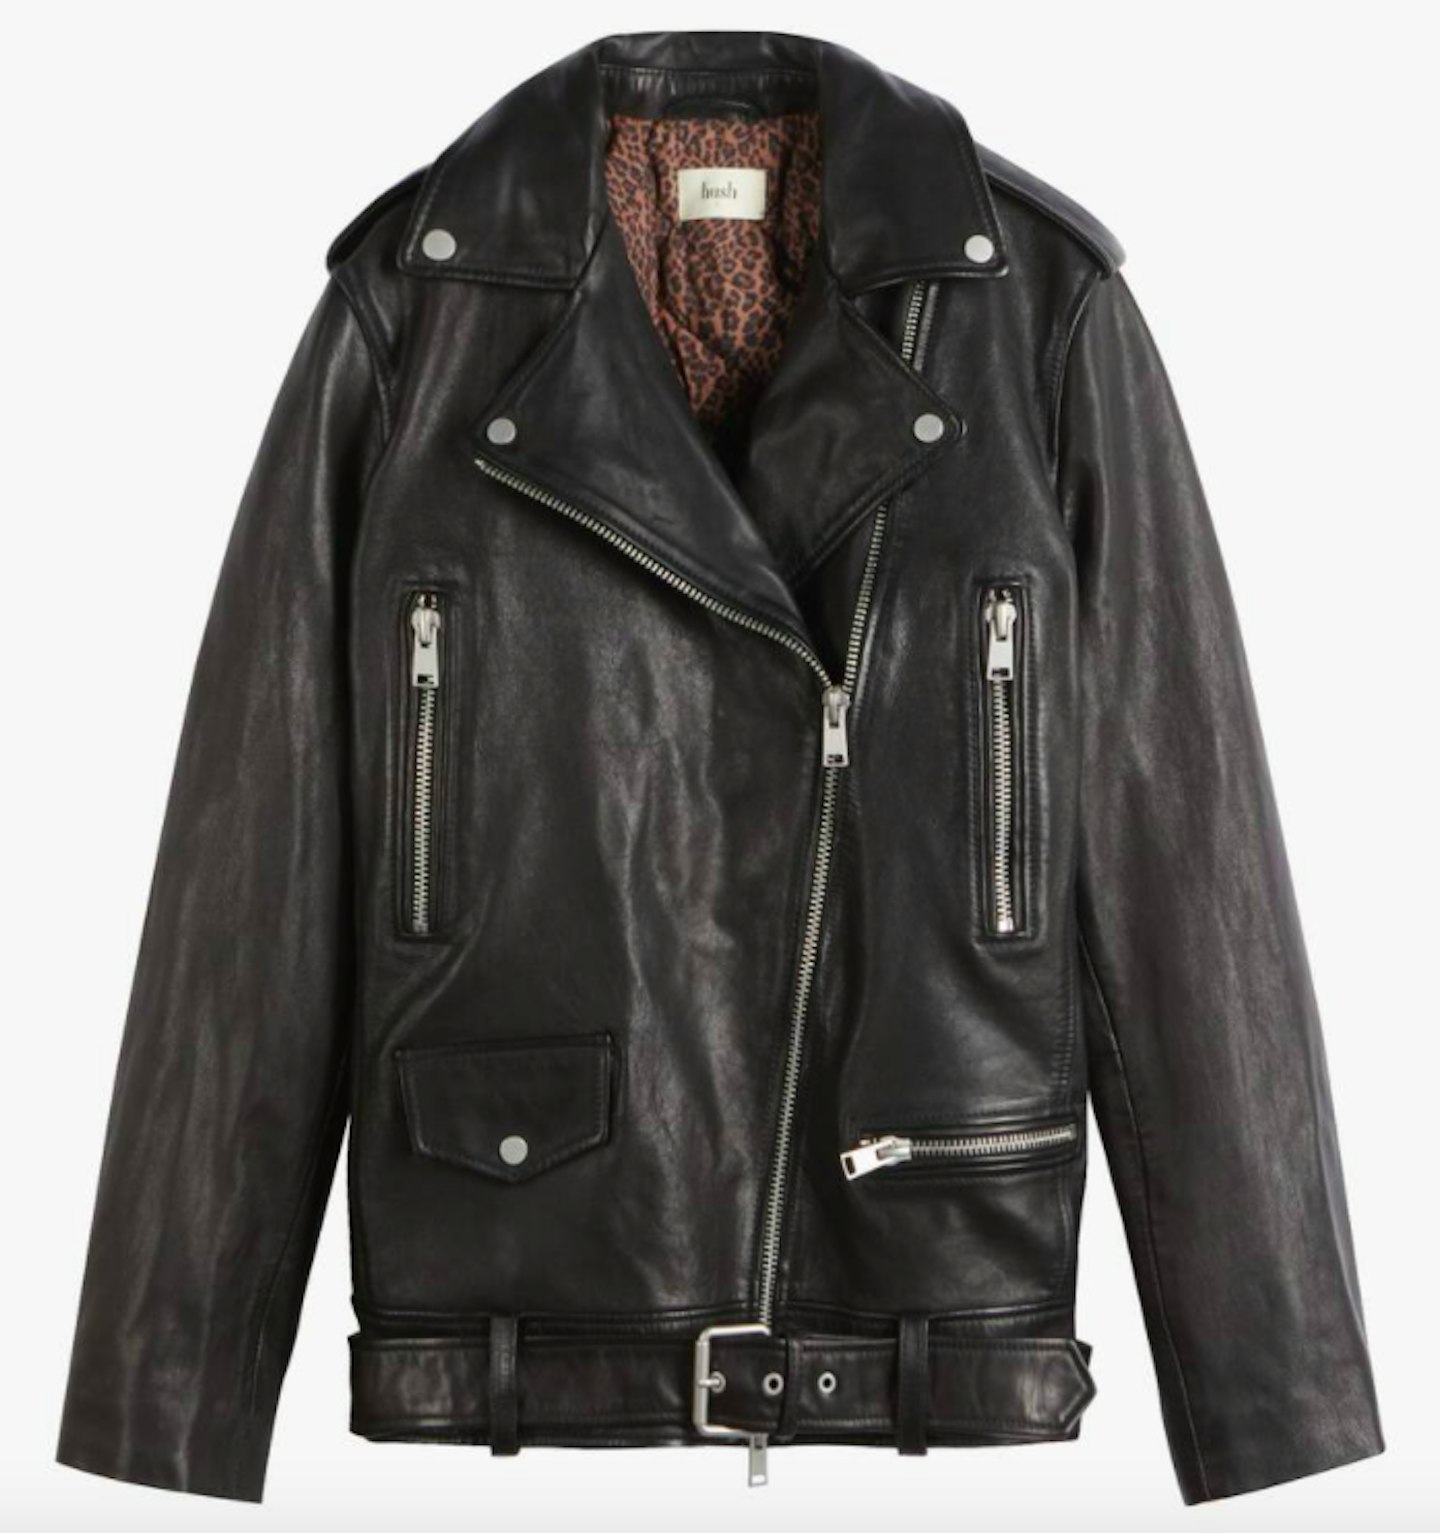 Hush, Oversized Leather Jacket, £389